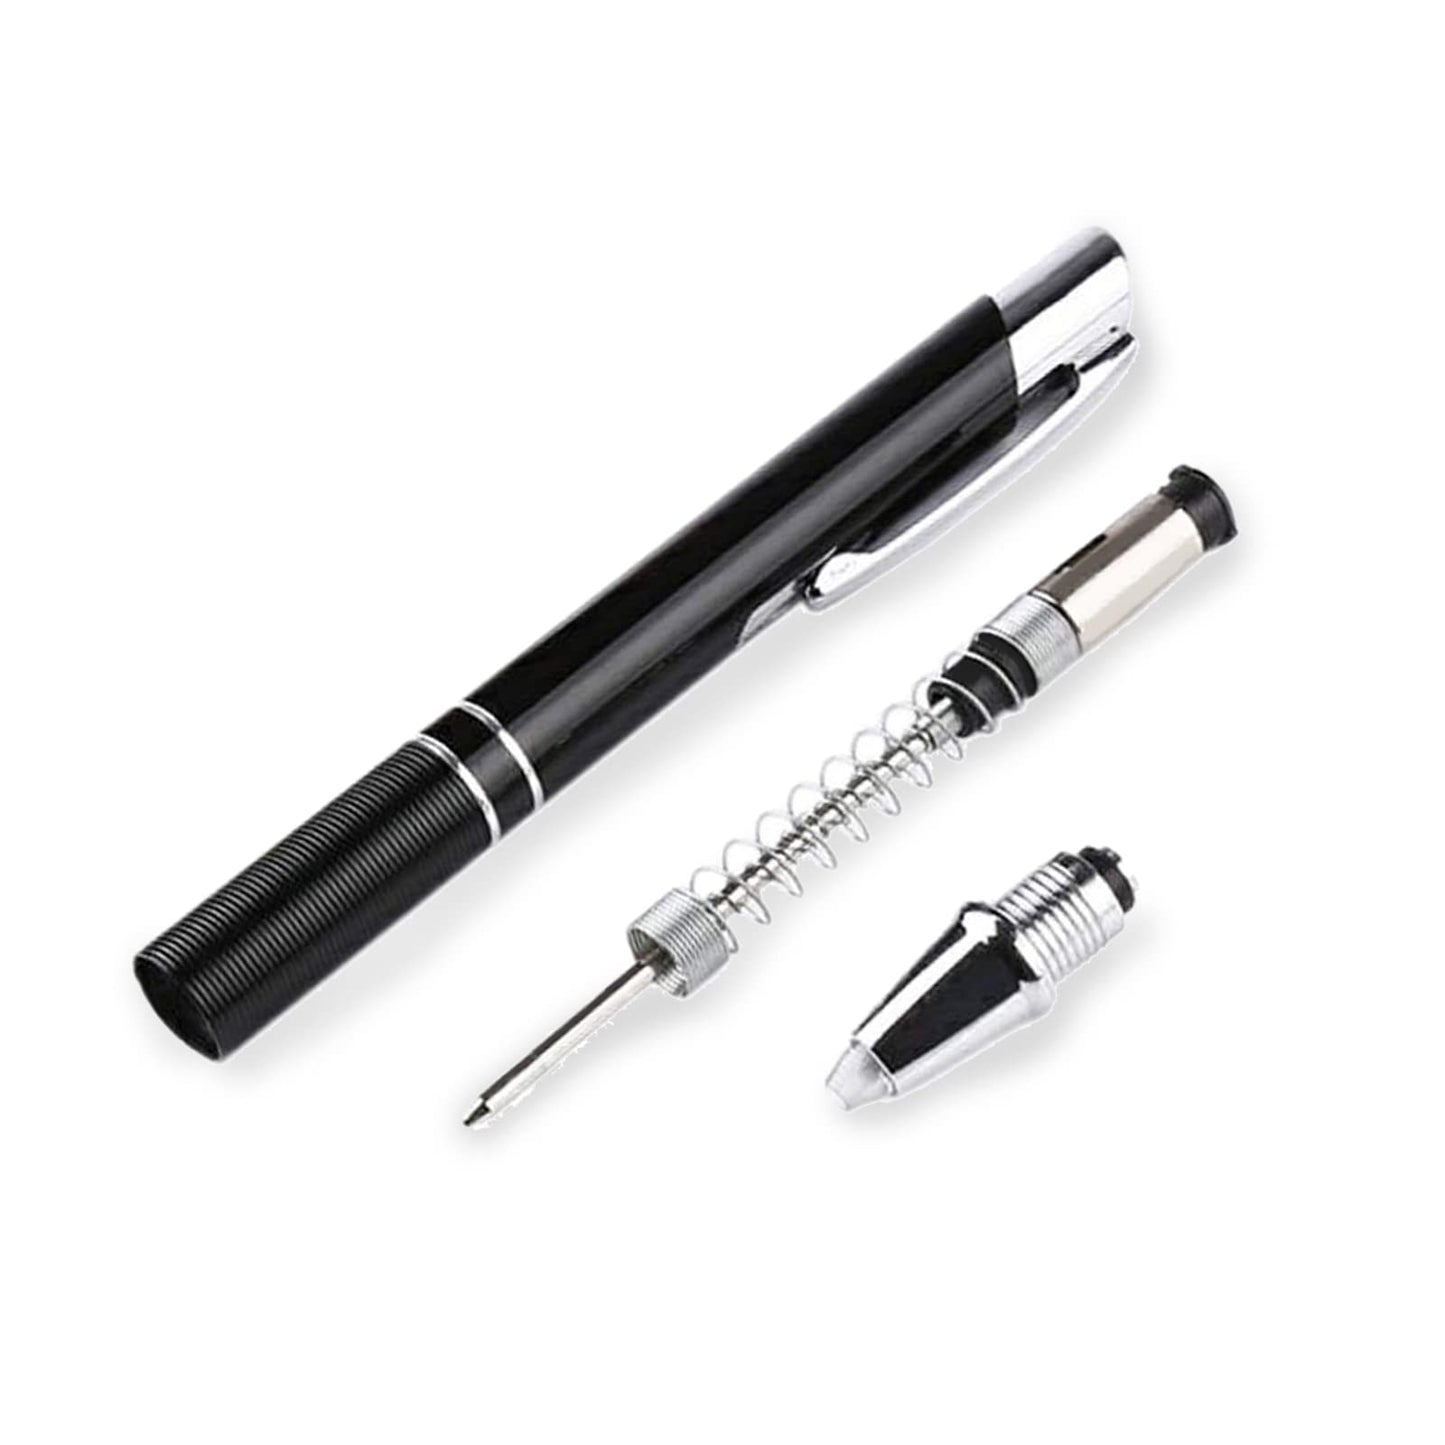 GS GLOWSEEN Lighted Tip Pen, LED Light Pen Ballpoint Ink Pen With Light, Light Up Pen for Writing in the Dark - 2 PK (White/Warm White)